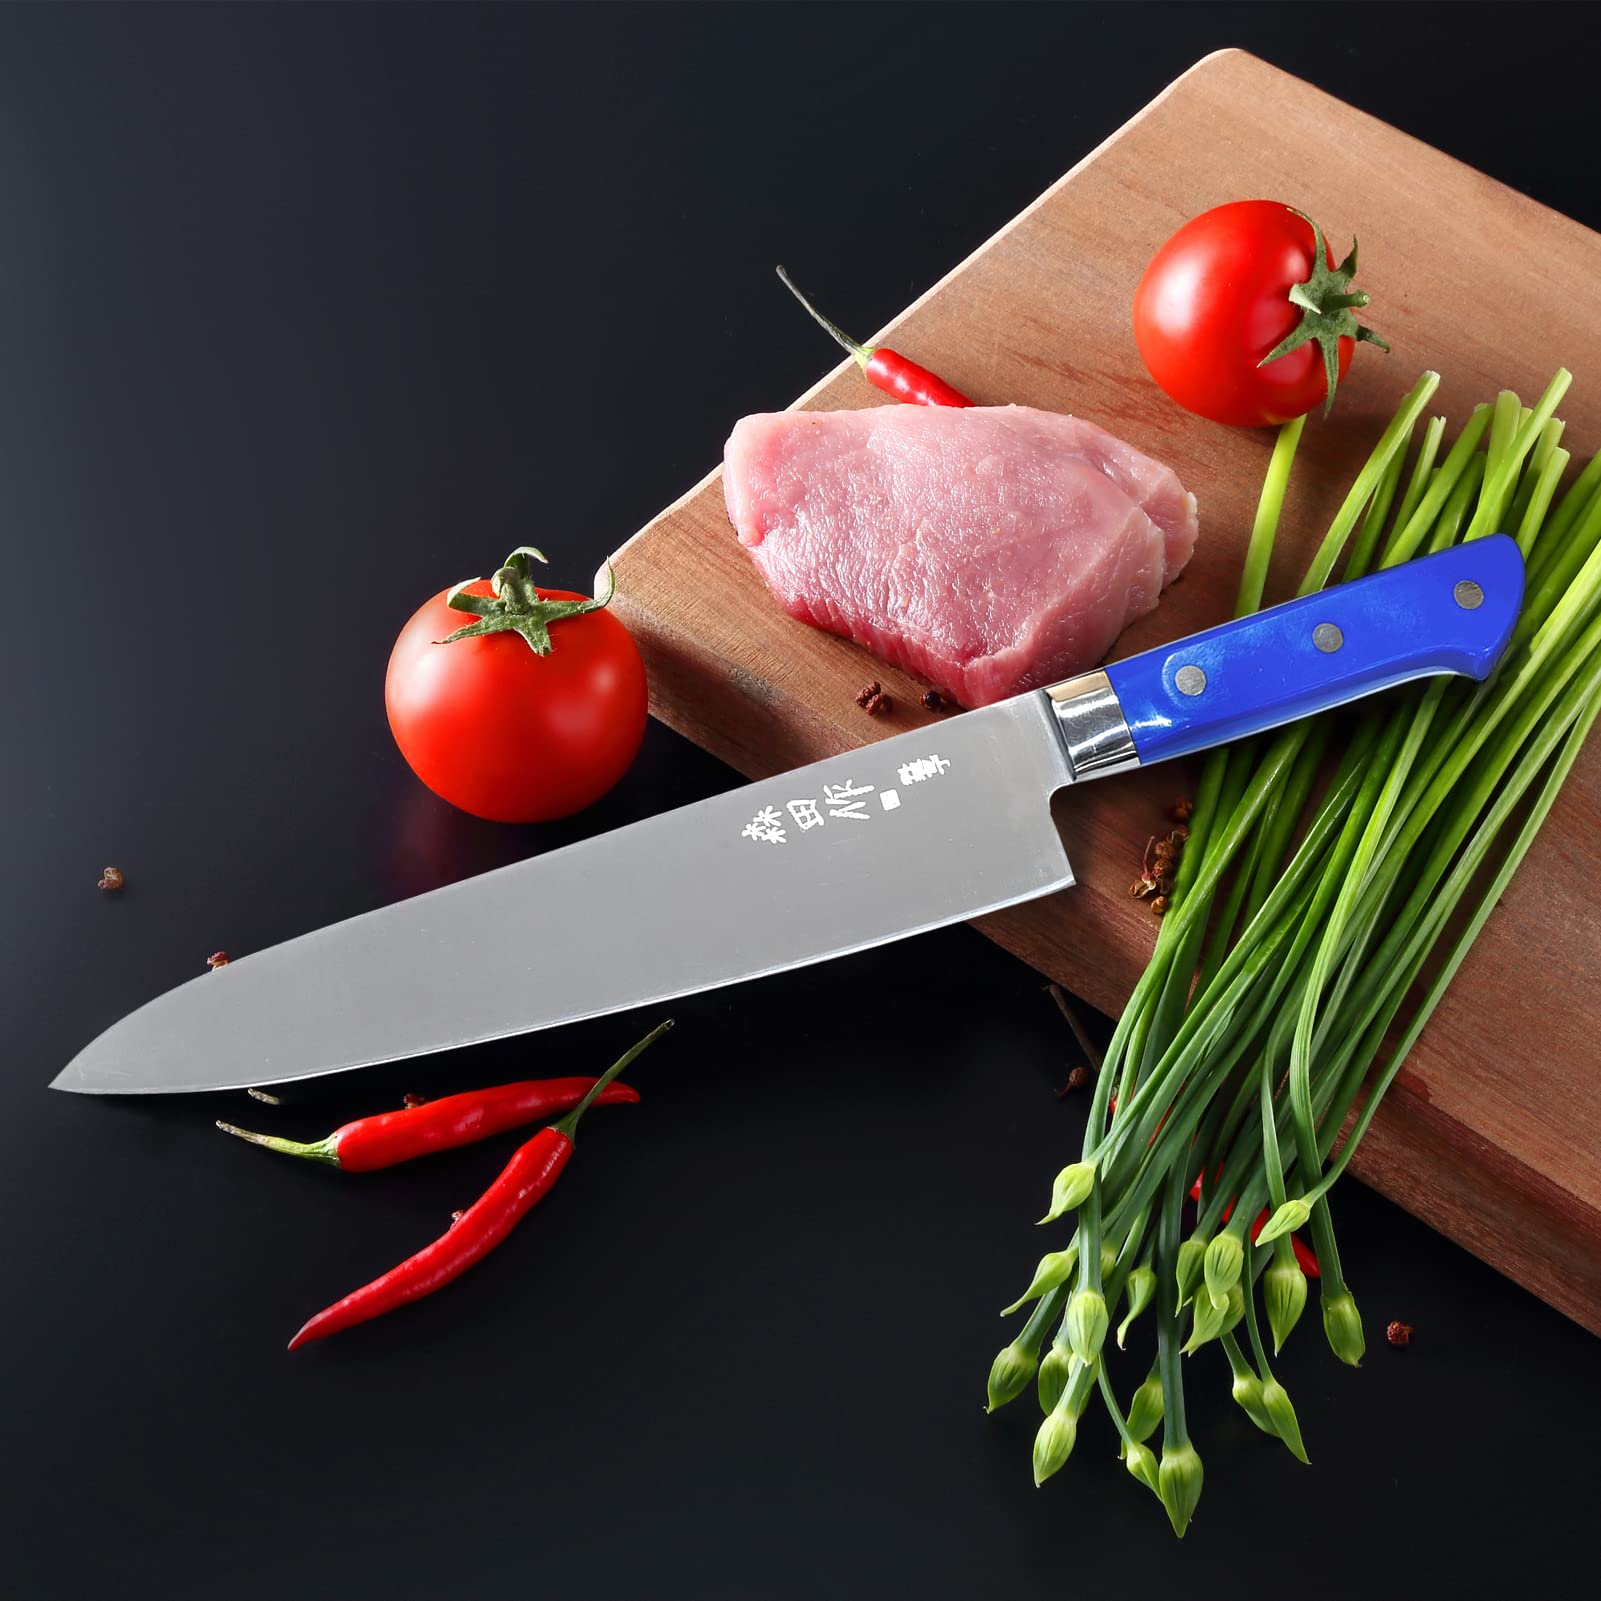 CHUYIREN 2 Pcs Japanese Chef Knife 9.5 inches, Professional Gyuto Chef Knife, Sharp Sashimi Knife with Black Ergonomic Handle, Sushi Knife